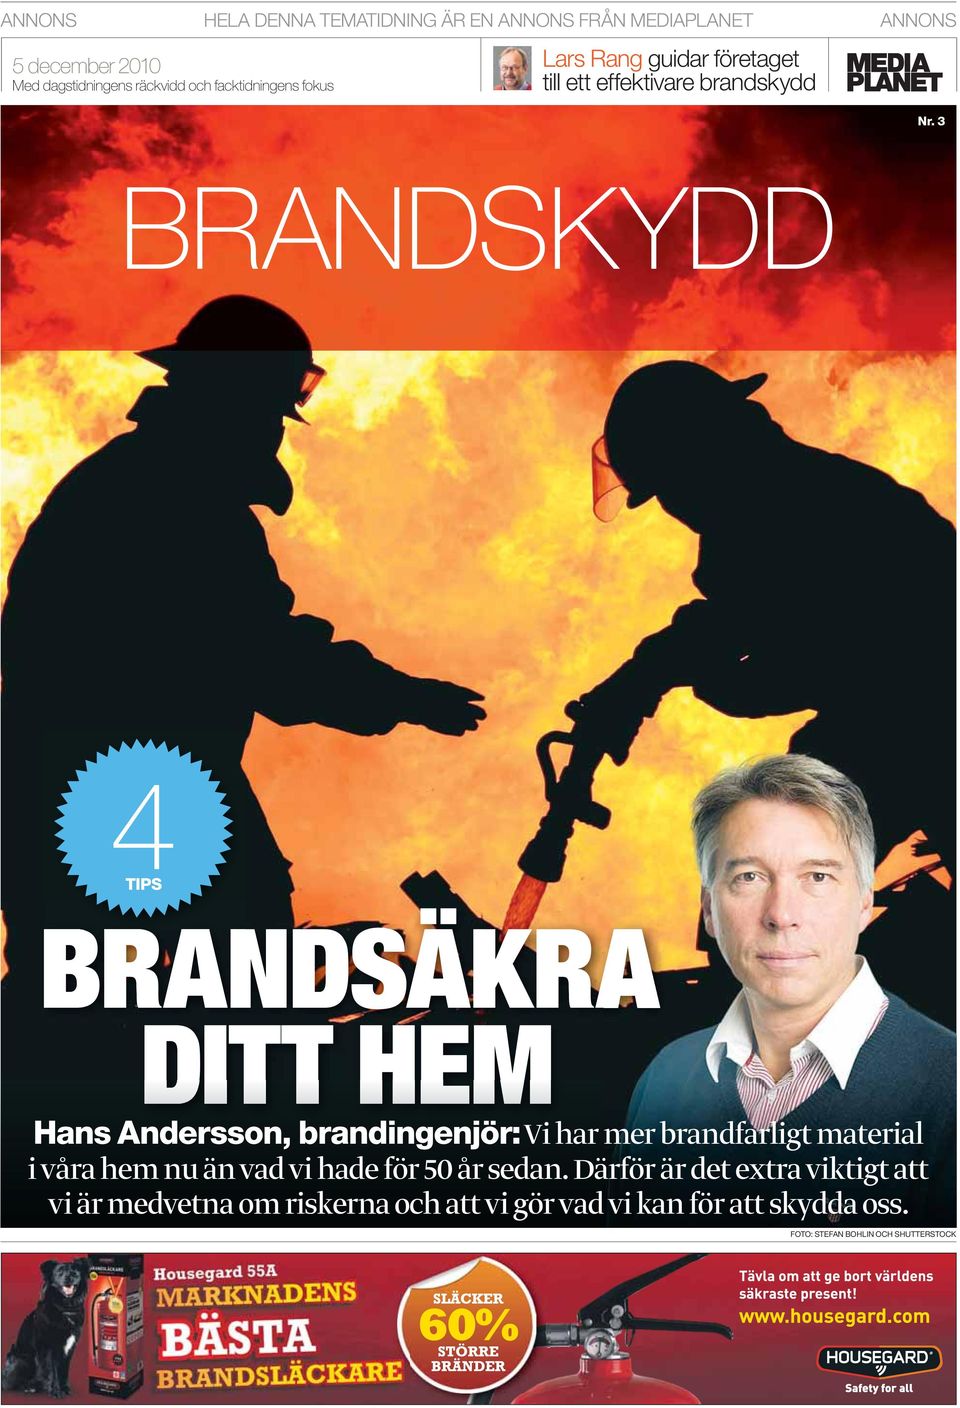 3 BRANDSKYDD 4TIPS BRANDSÄKRA DITT HEM Hans Andersson, brandingenjör: Vi har mer brandfarligt material i våra hem nu än